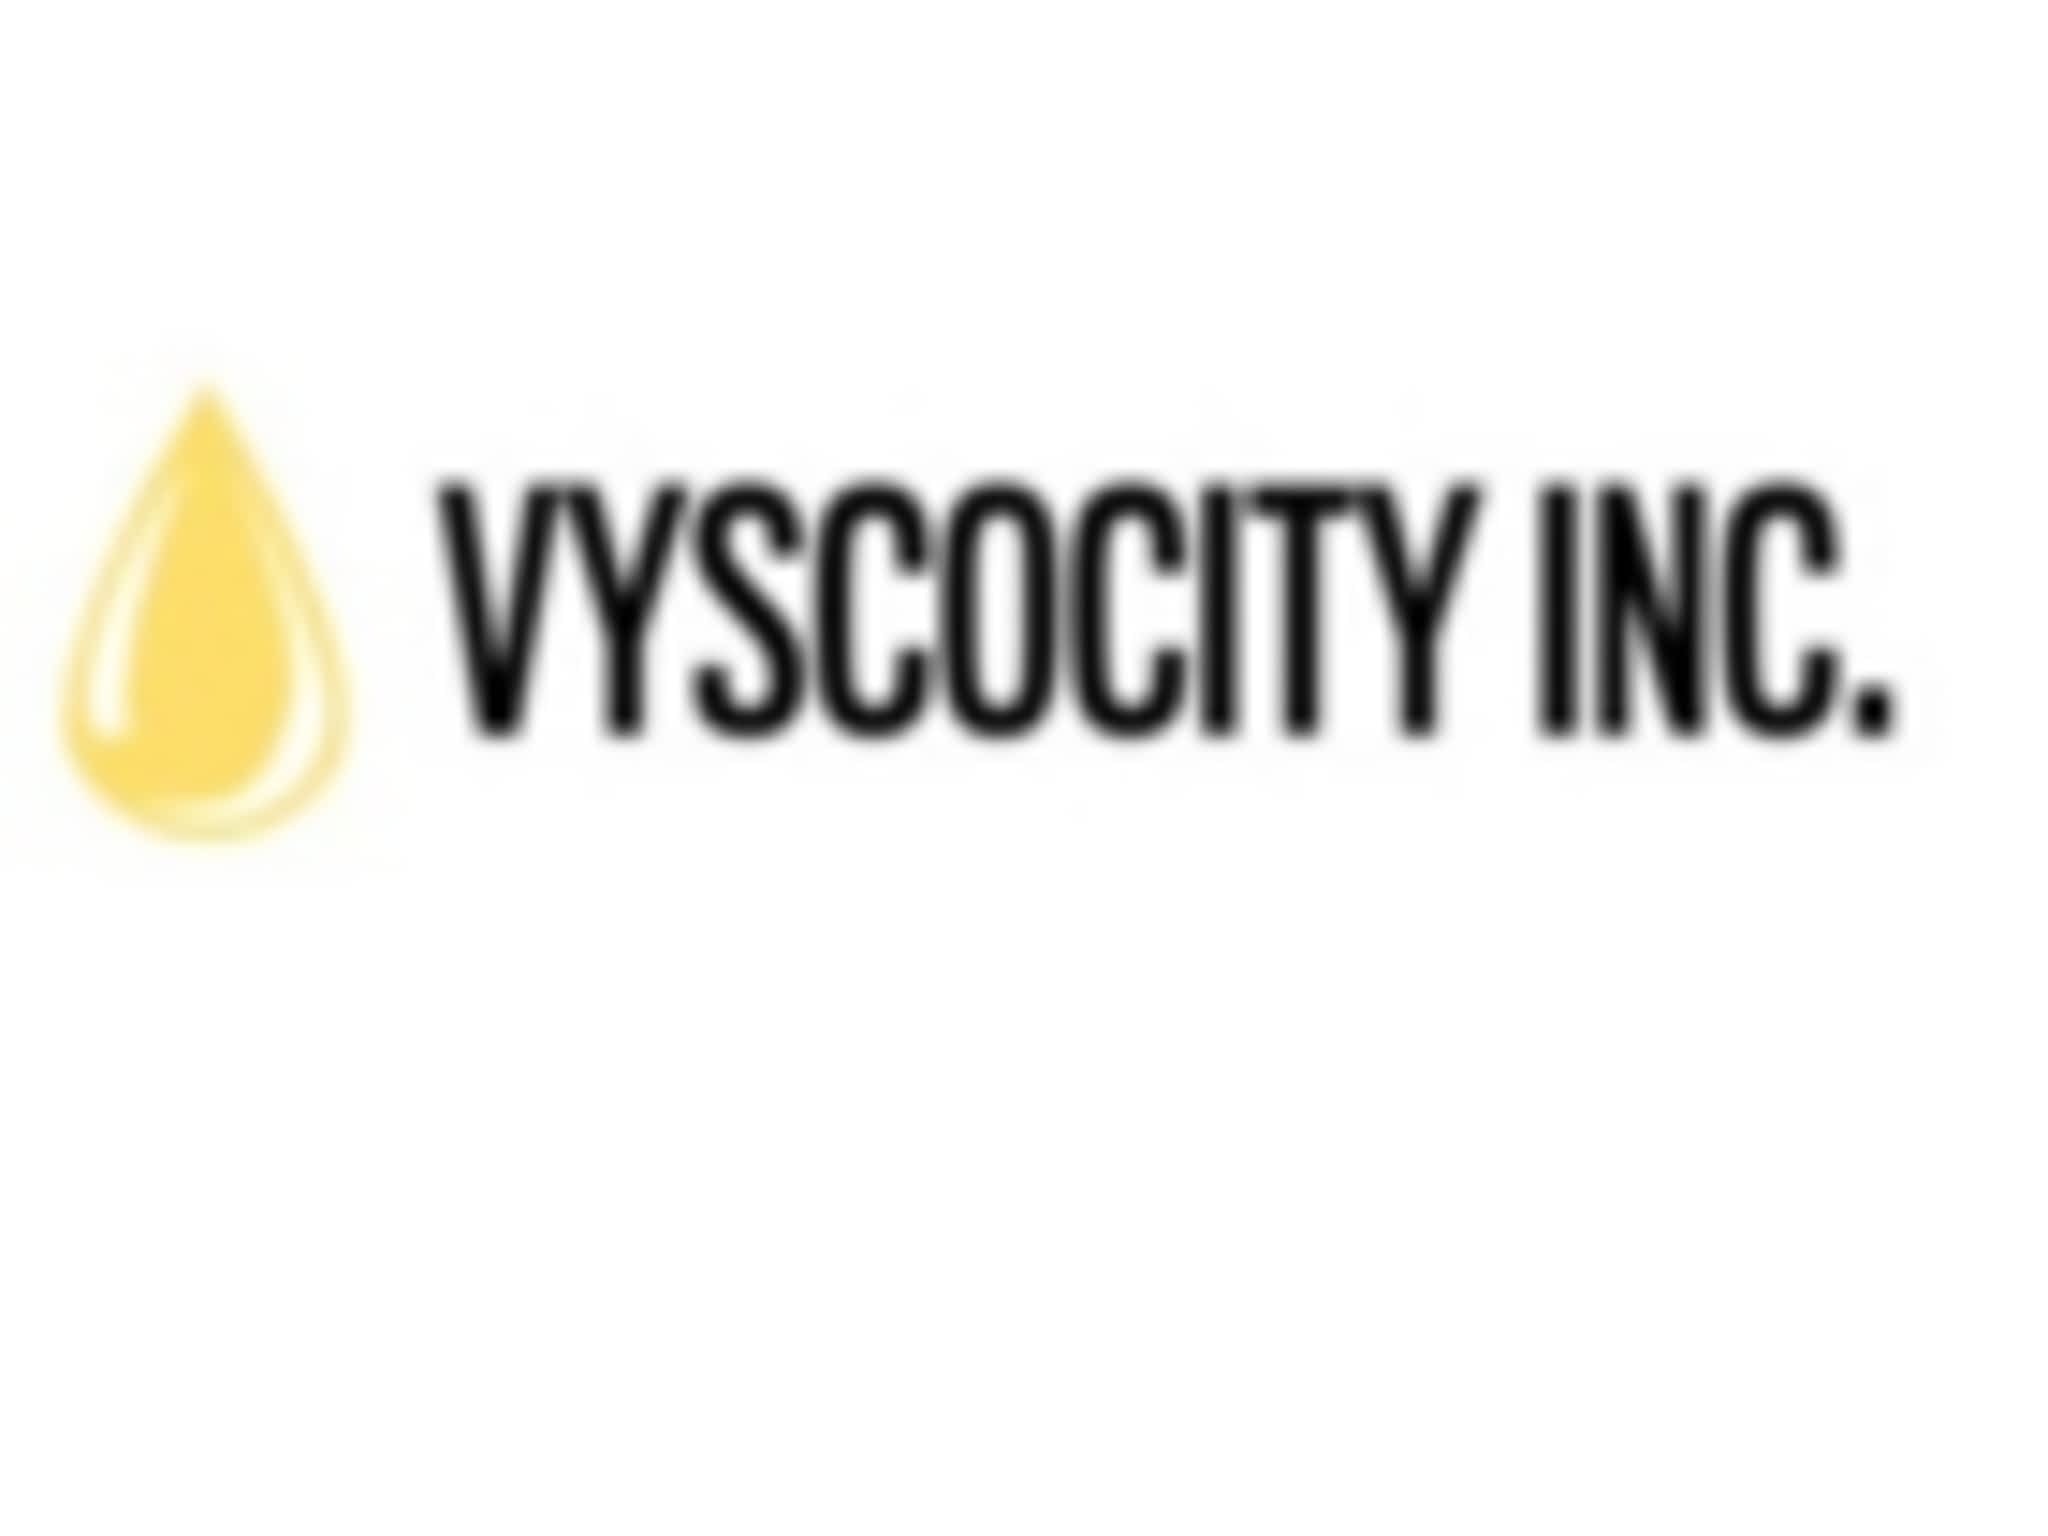 photo Vyscocity Inc.